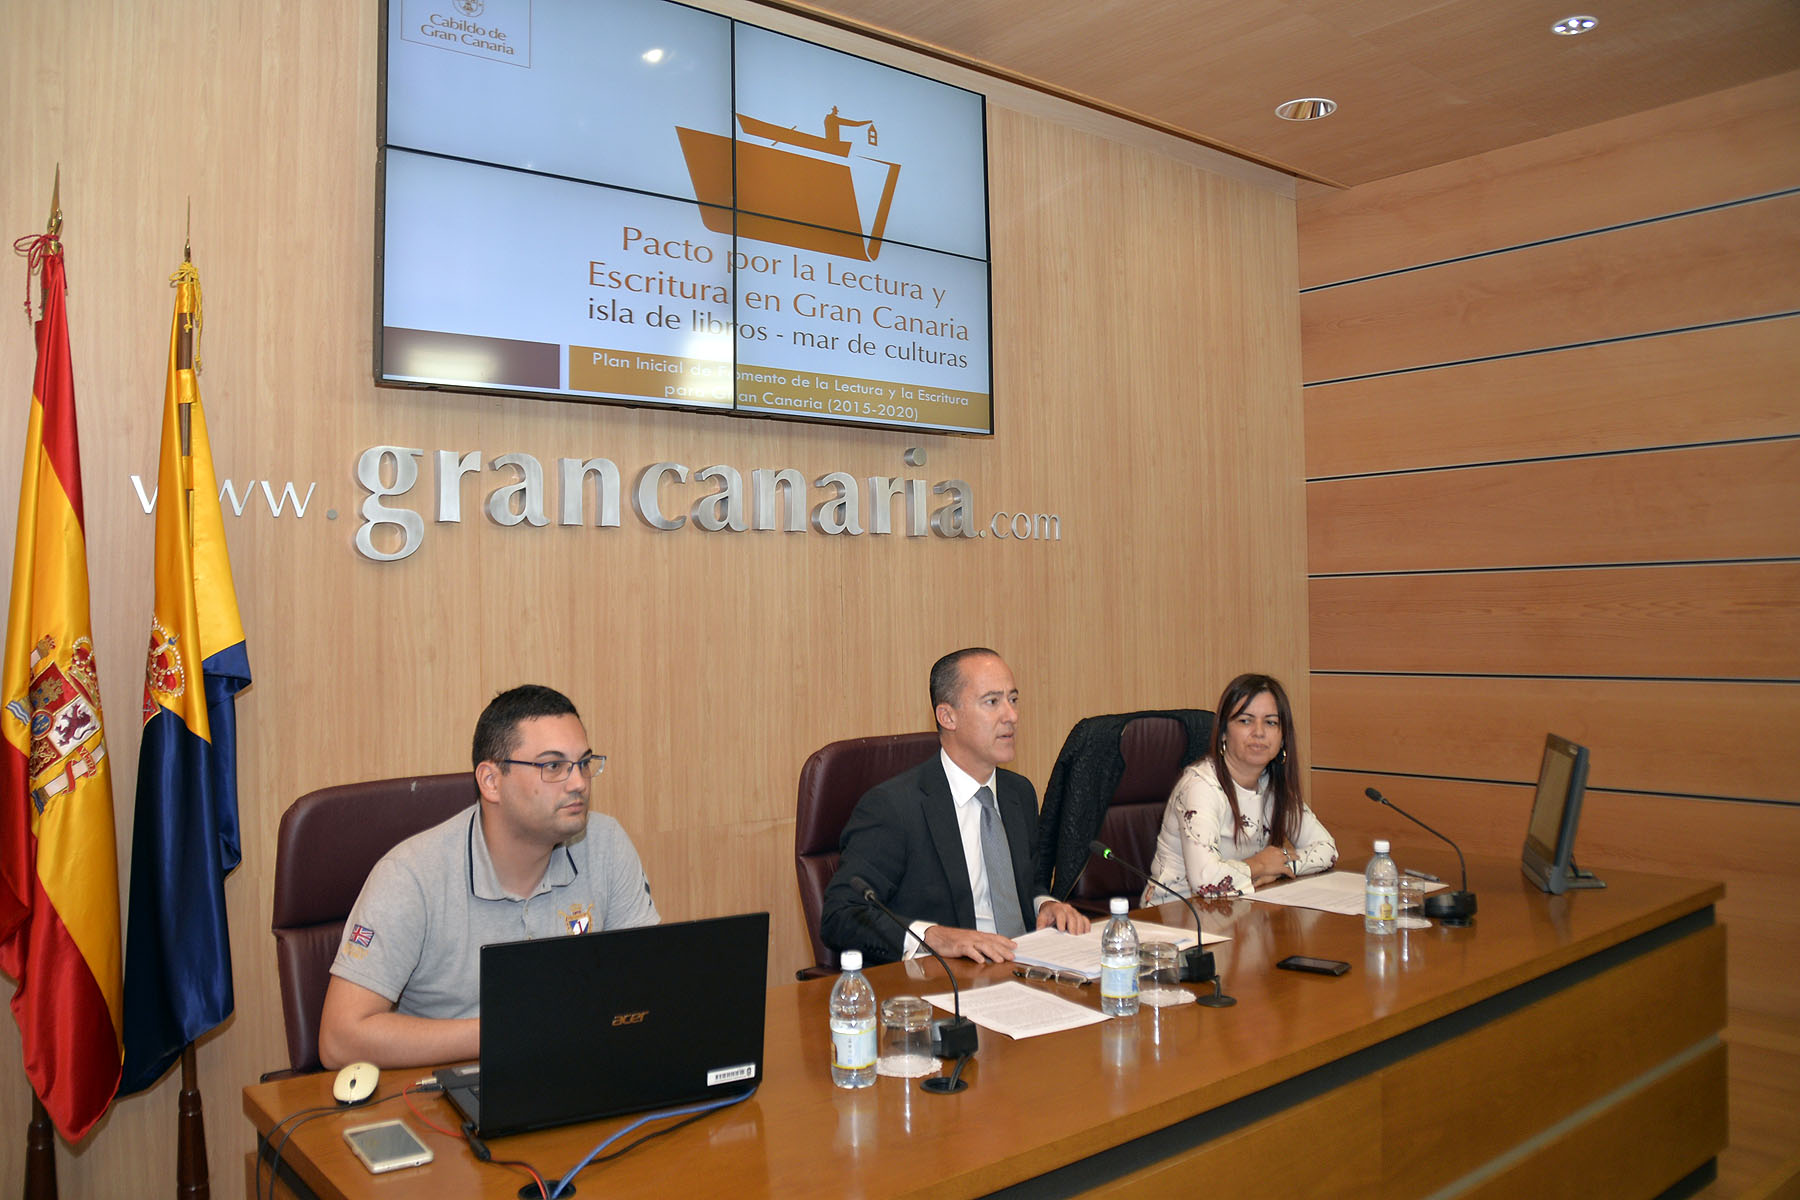 Presentación del Plan de Fomento y Escritura para Gran Canaria 2015-2020